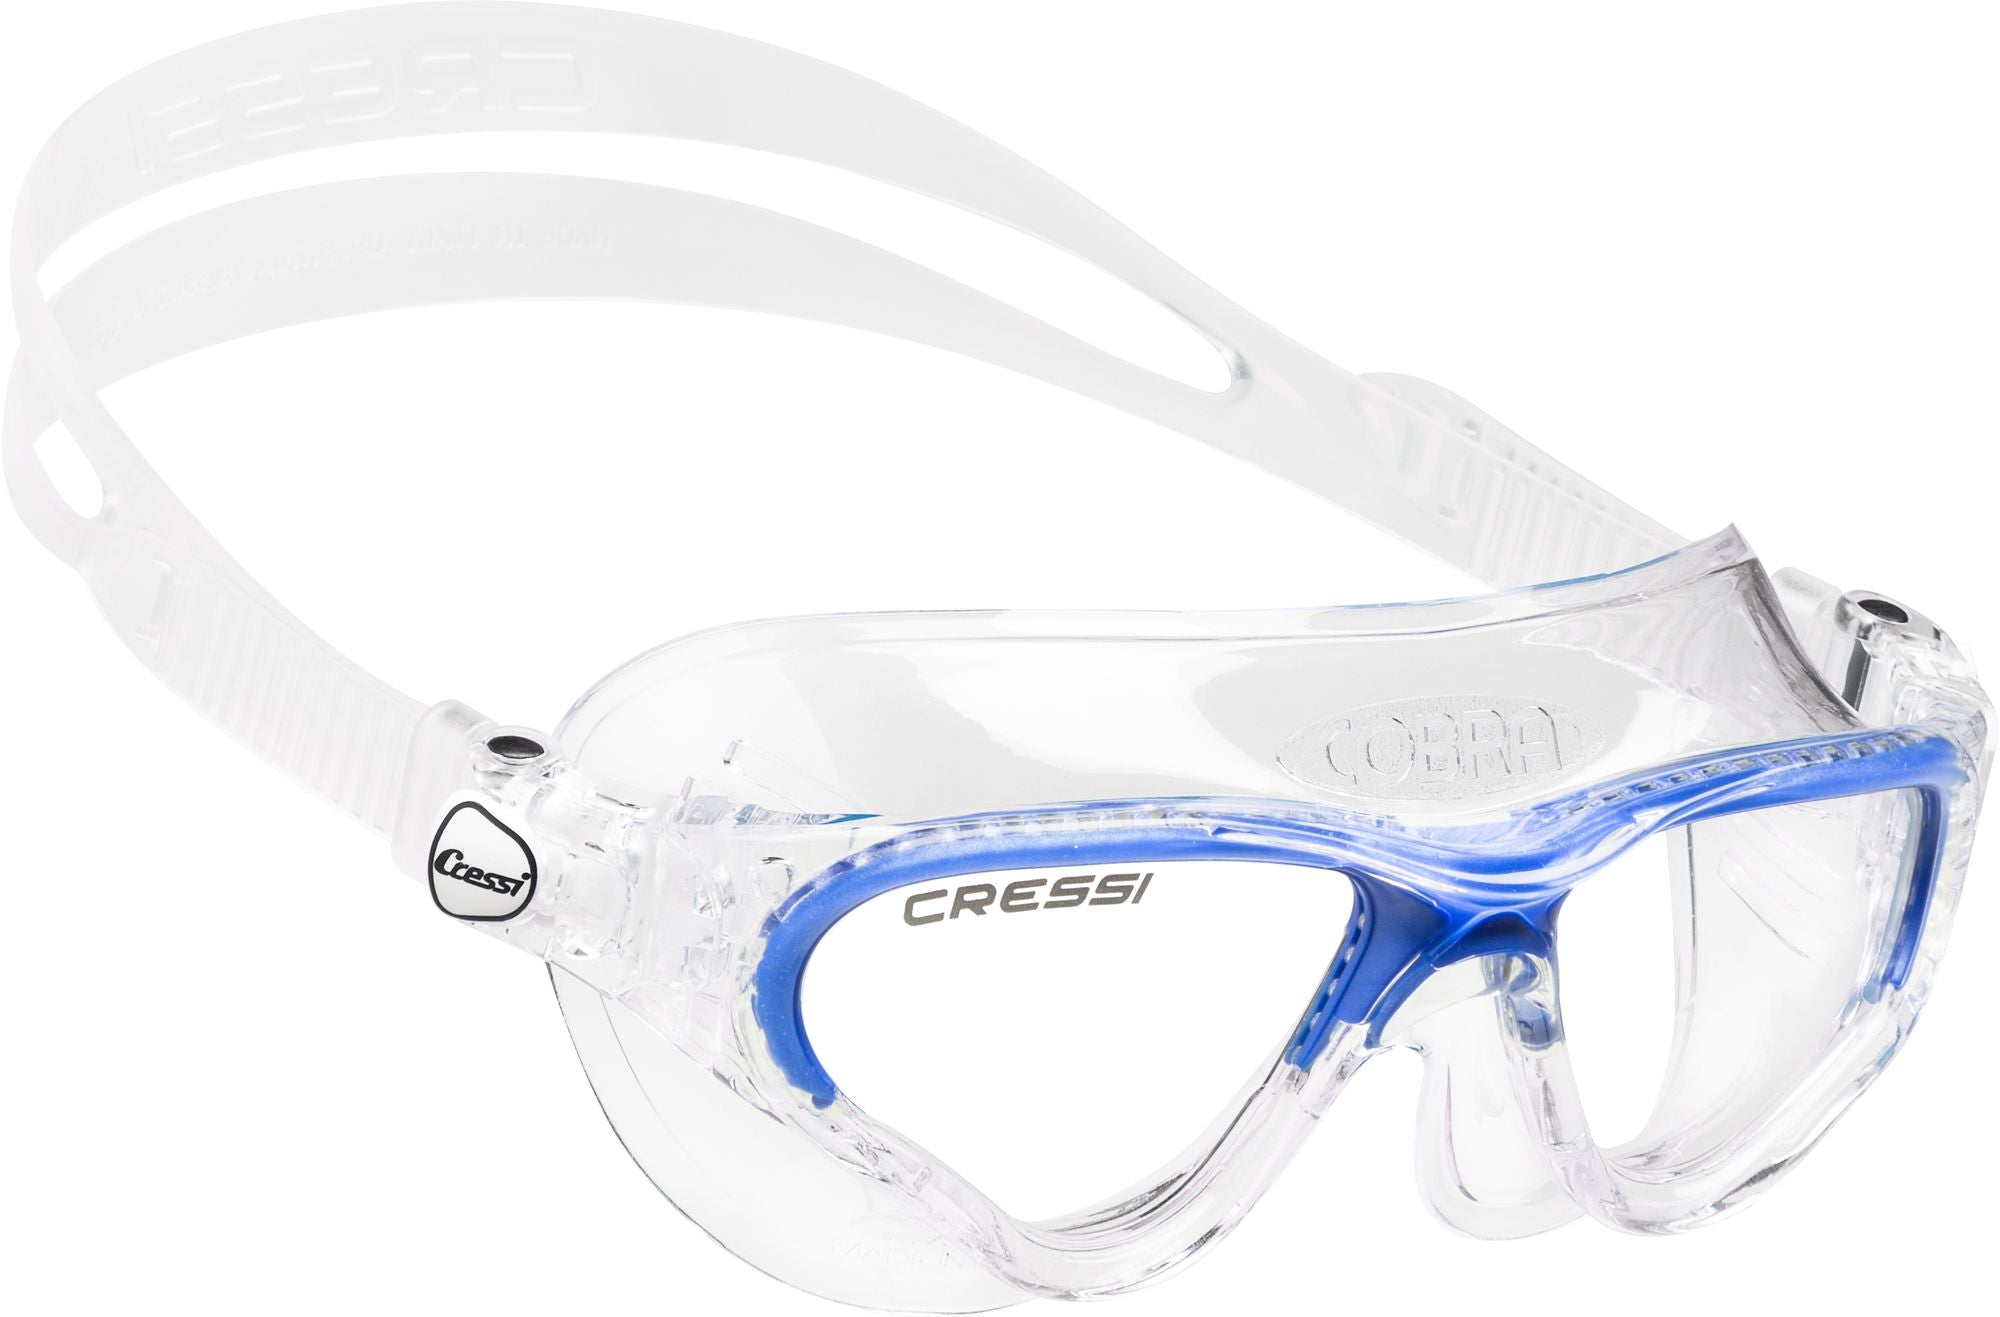 Cobra Swimming Goggles